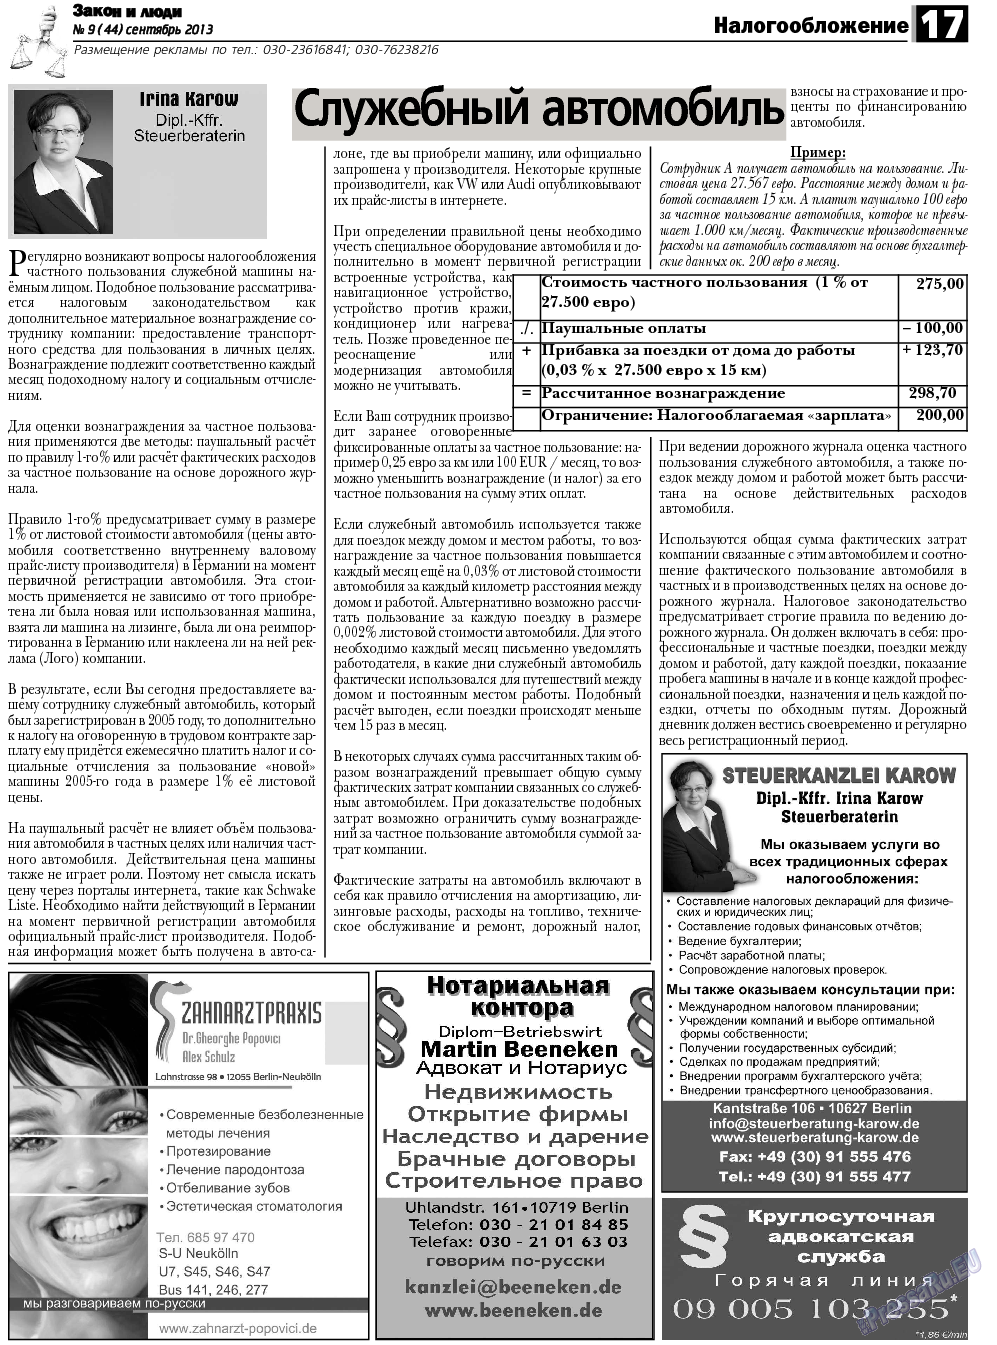 Закон и люди, газета. 2013 №9 стр.17